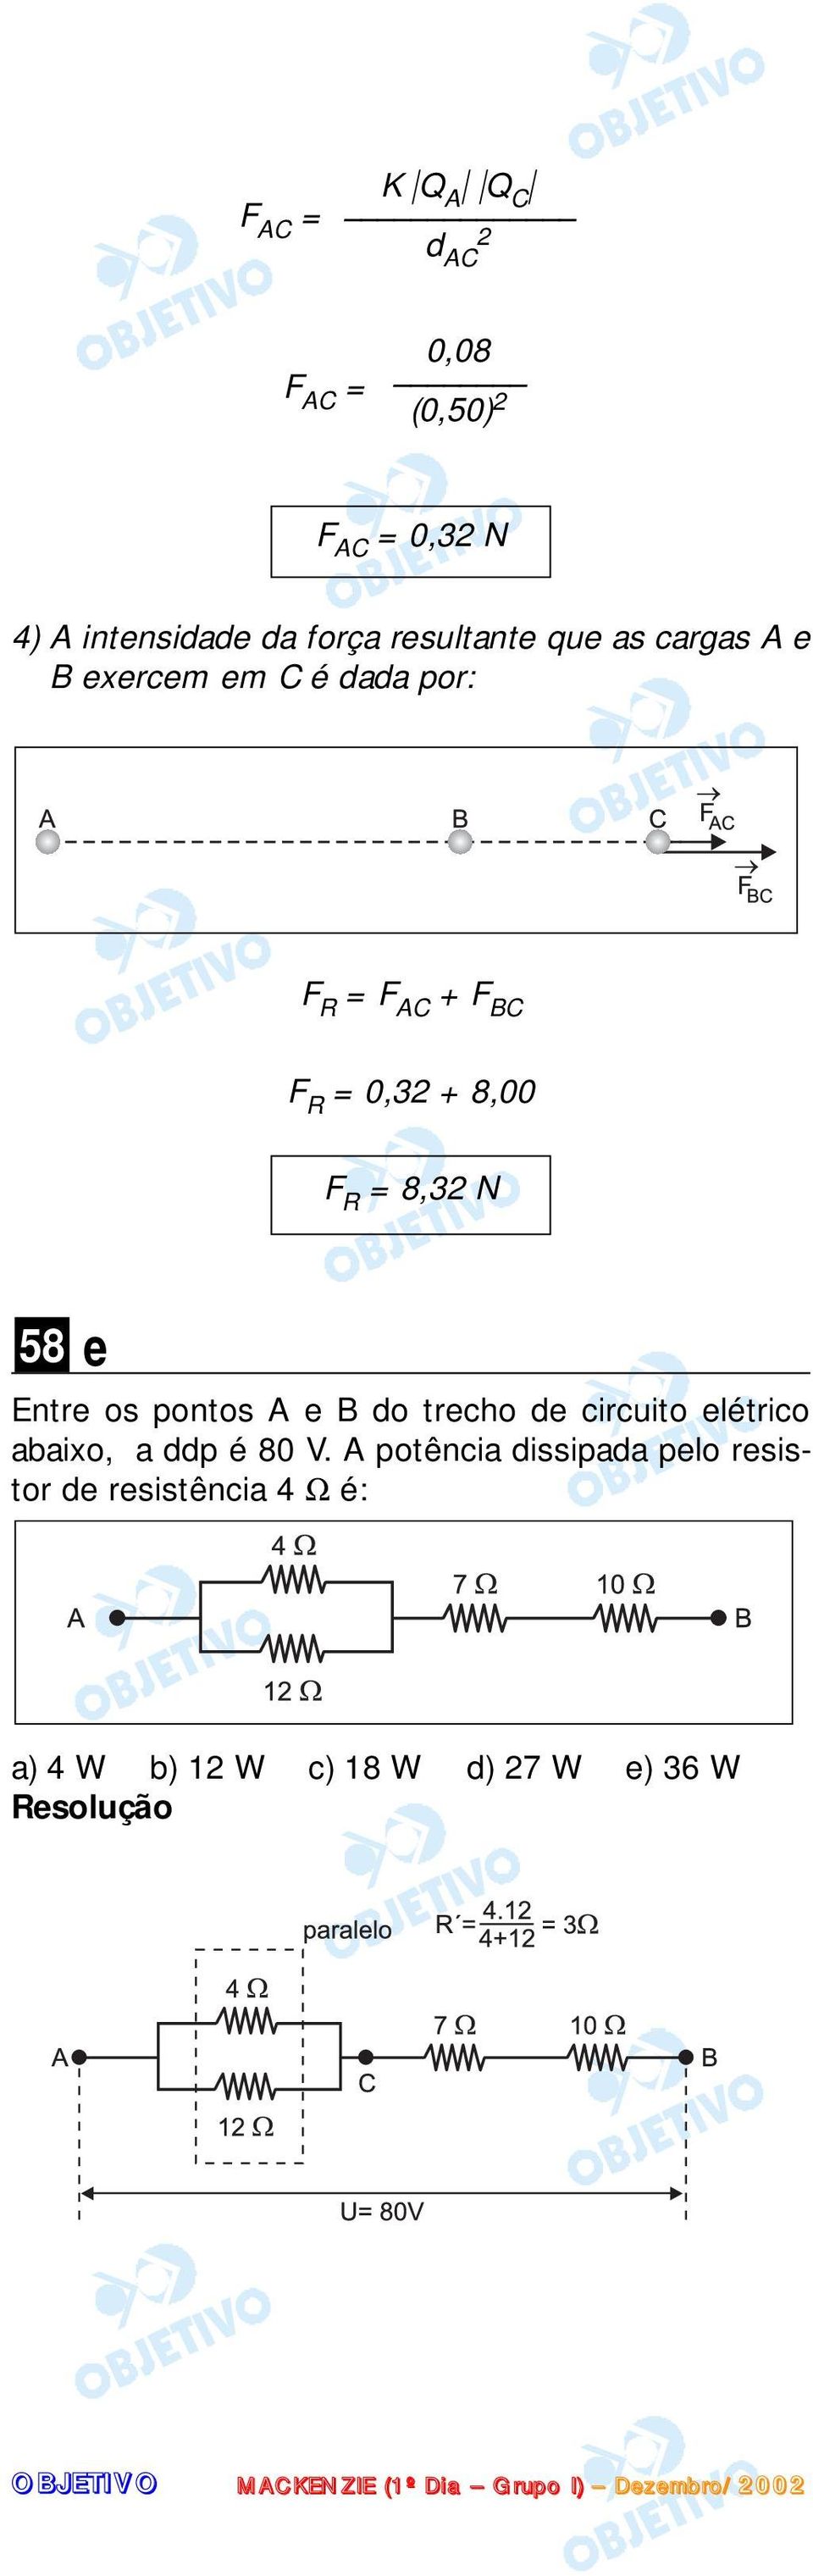 pontos A e B do trecho de circuito elétrico abaixo, a ddp é 80 V.